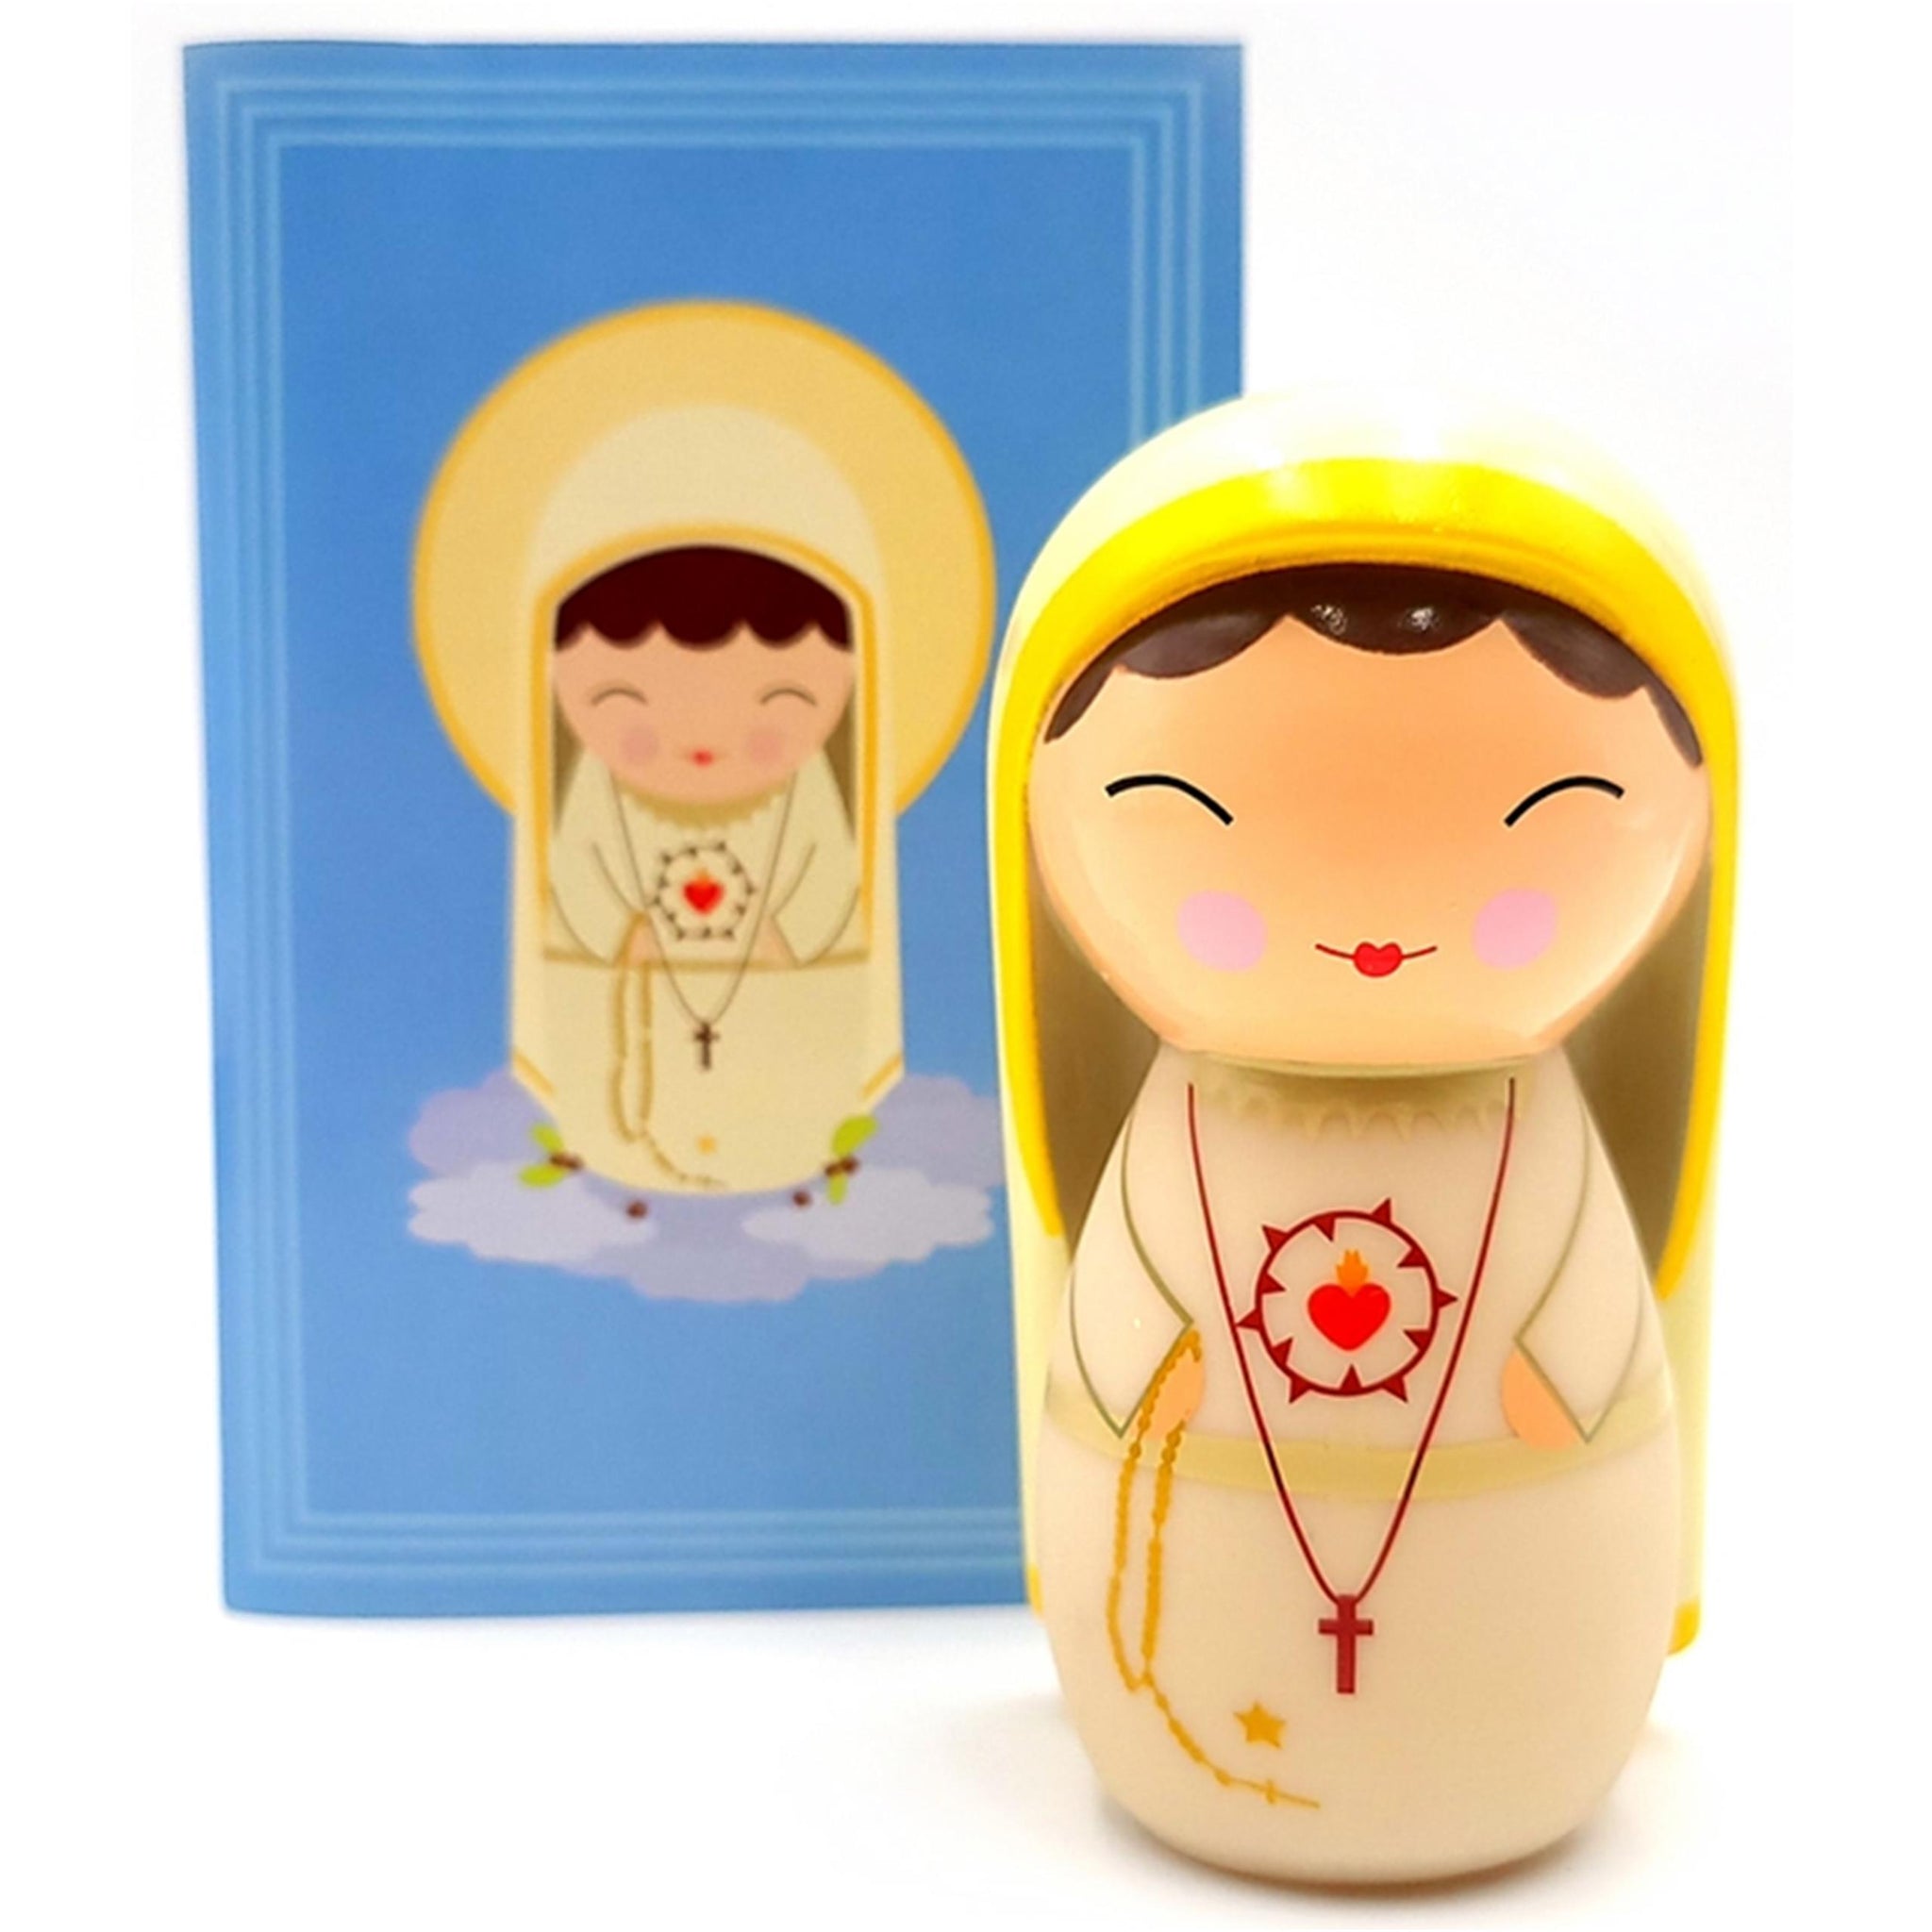 Virgin of Fatima - Devotional Vinyl Figure